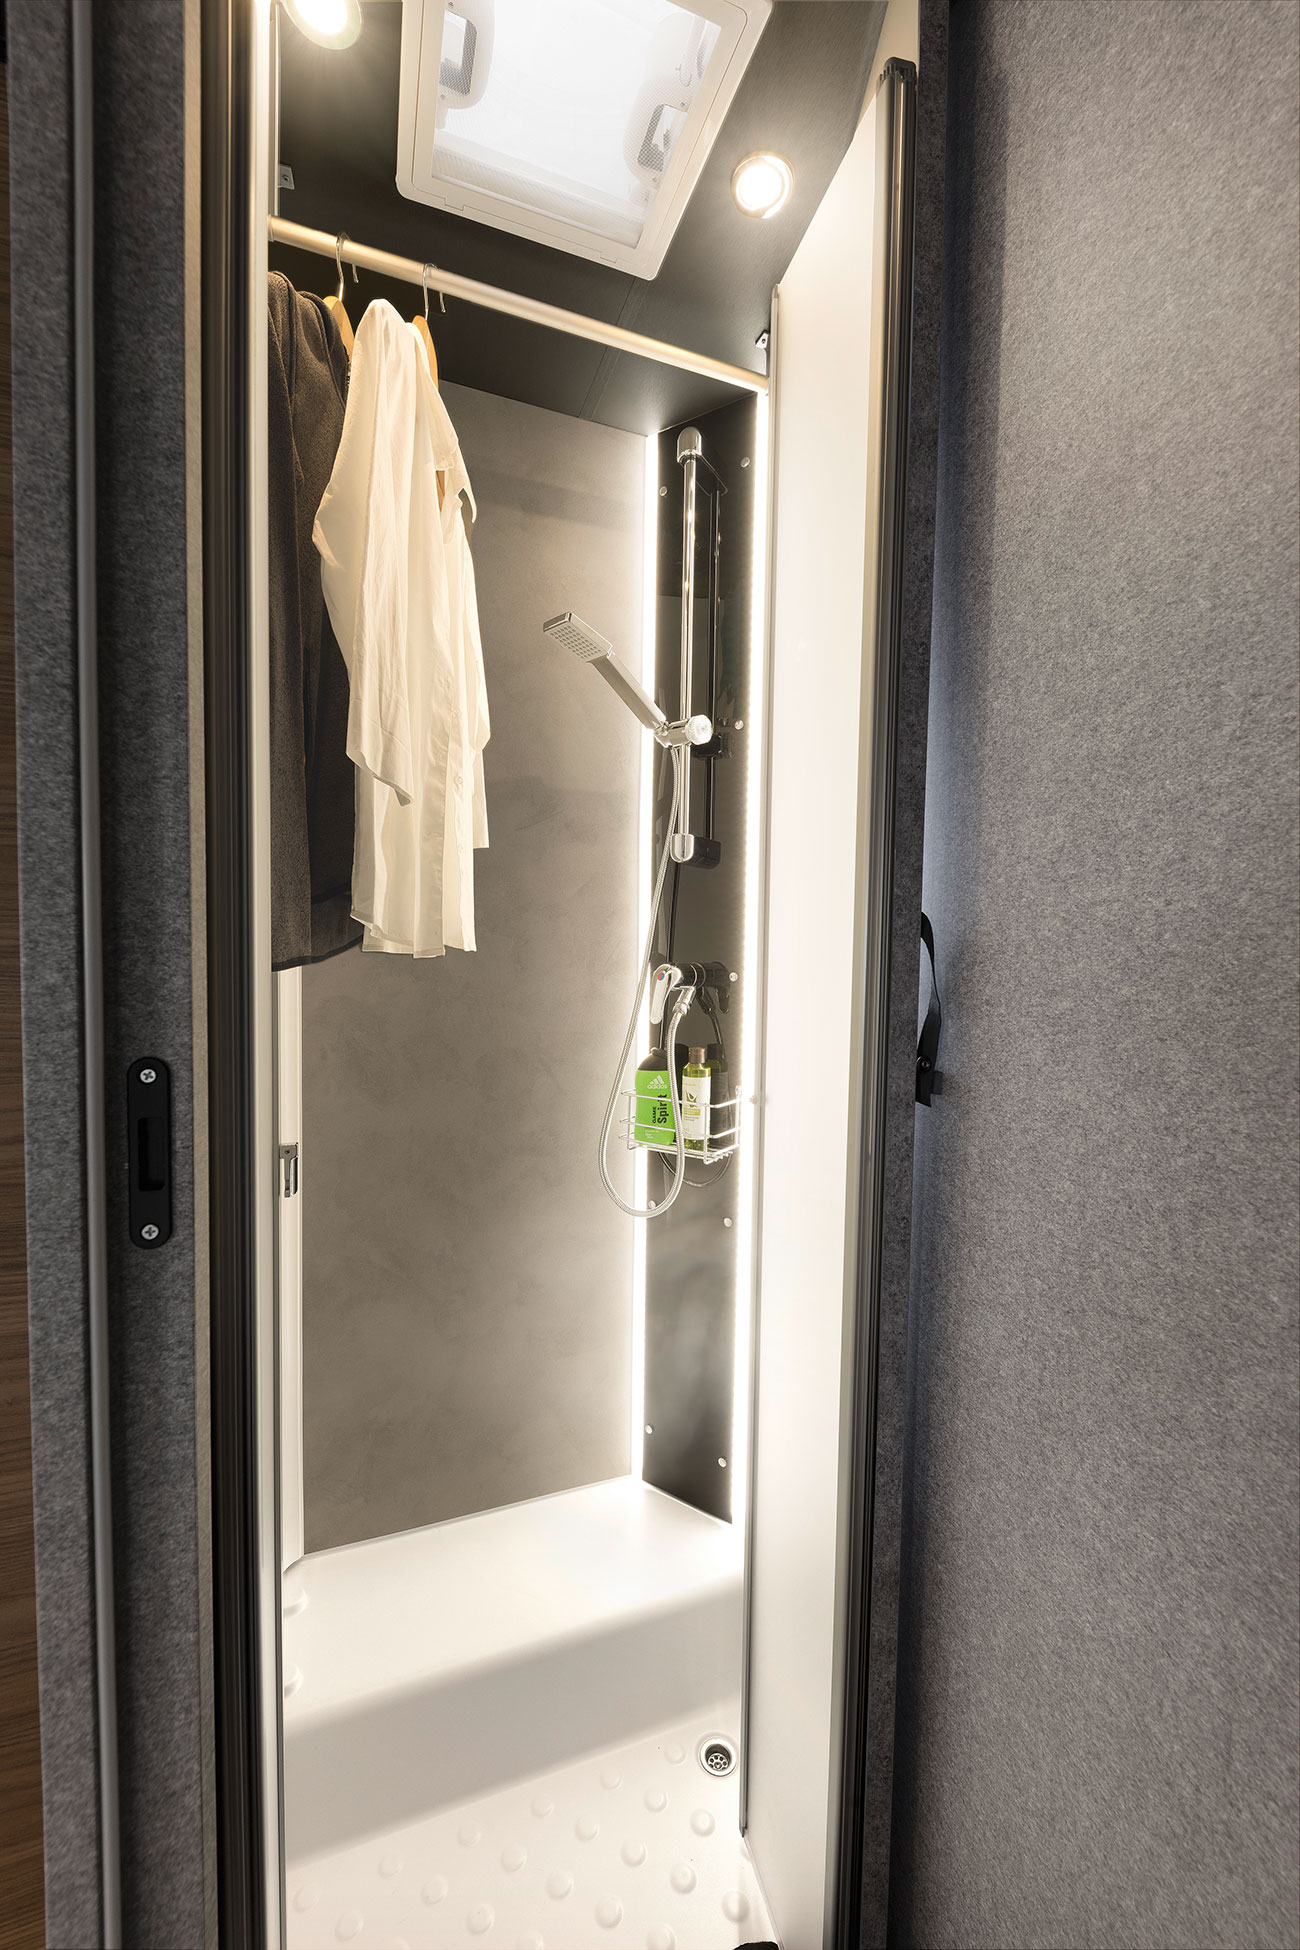 Cuando no se utiliza, la ducha puede convertirse en un tendedero para la ropa mojada o, simplemente, en una extensión del armario ropero.